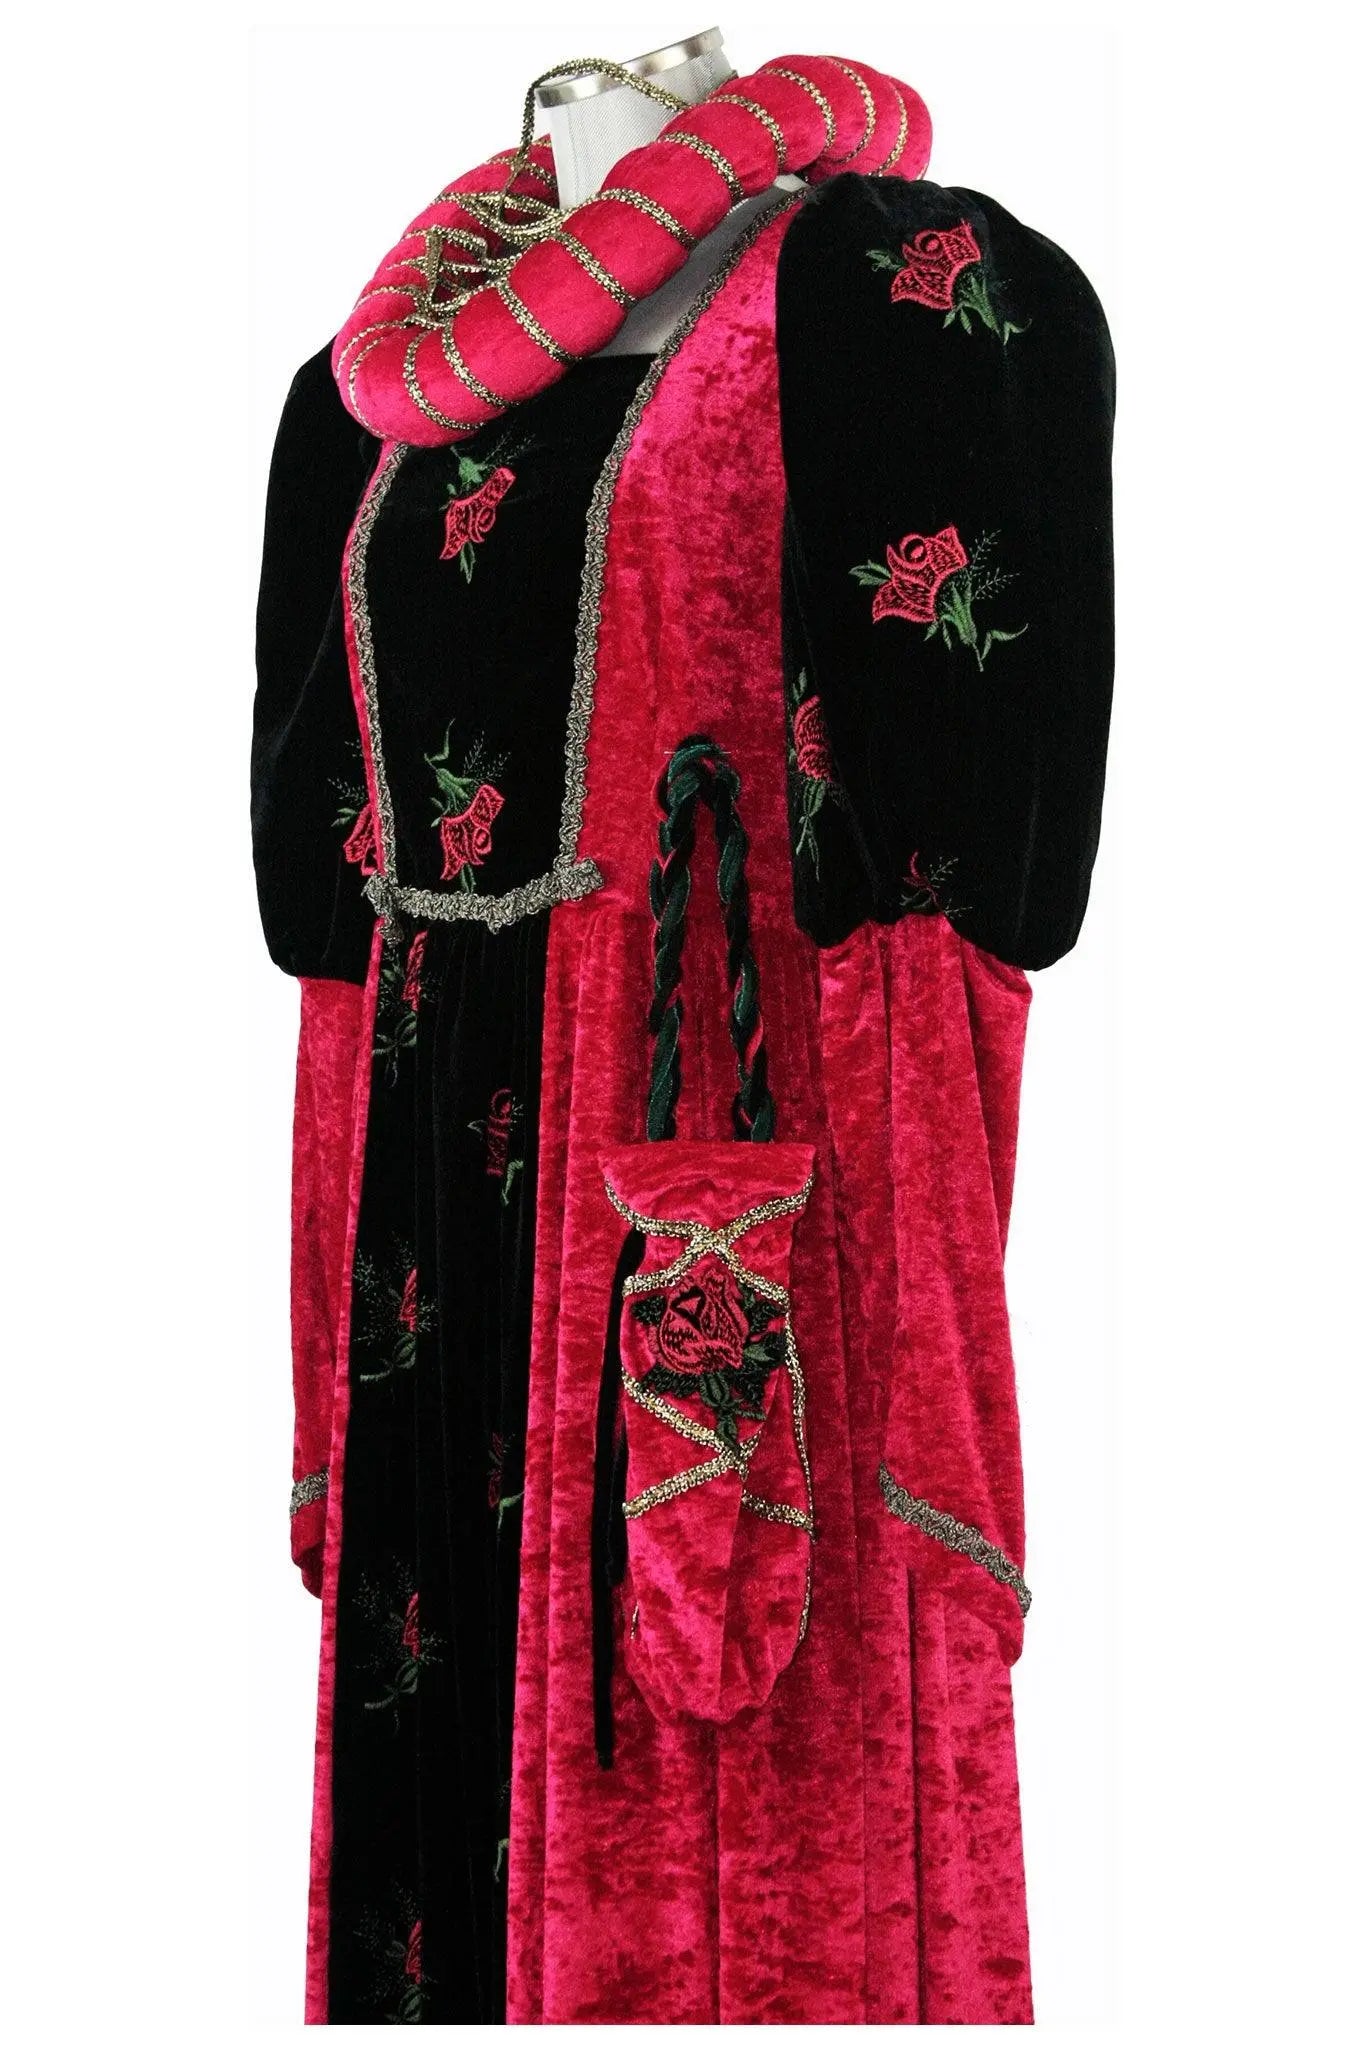 Costume donna del tardo medioevo o inizio rinascimento - storico - car